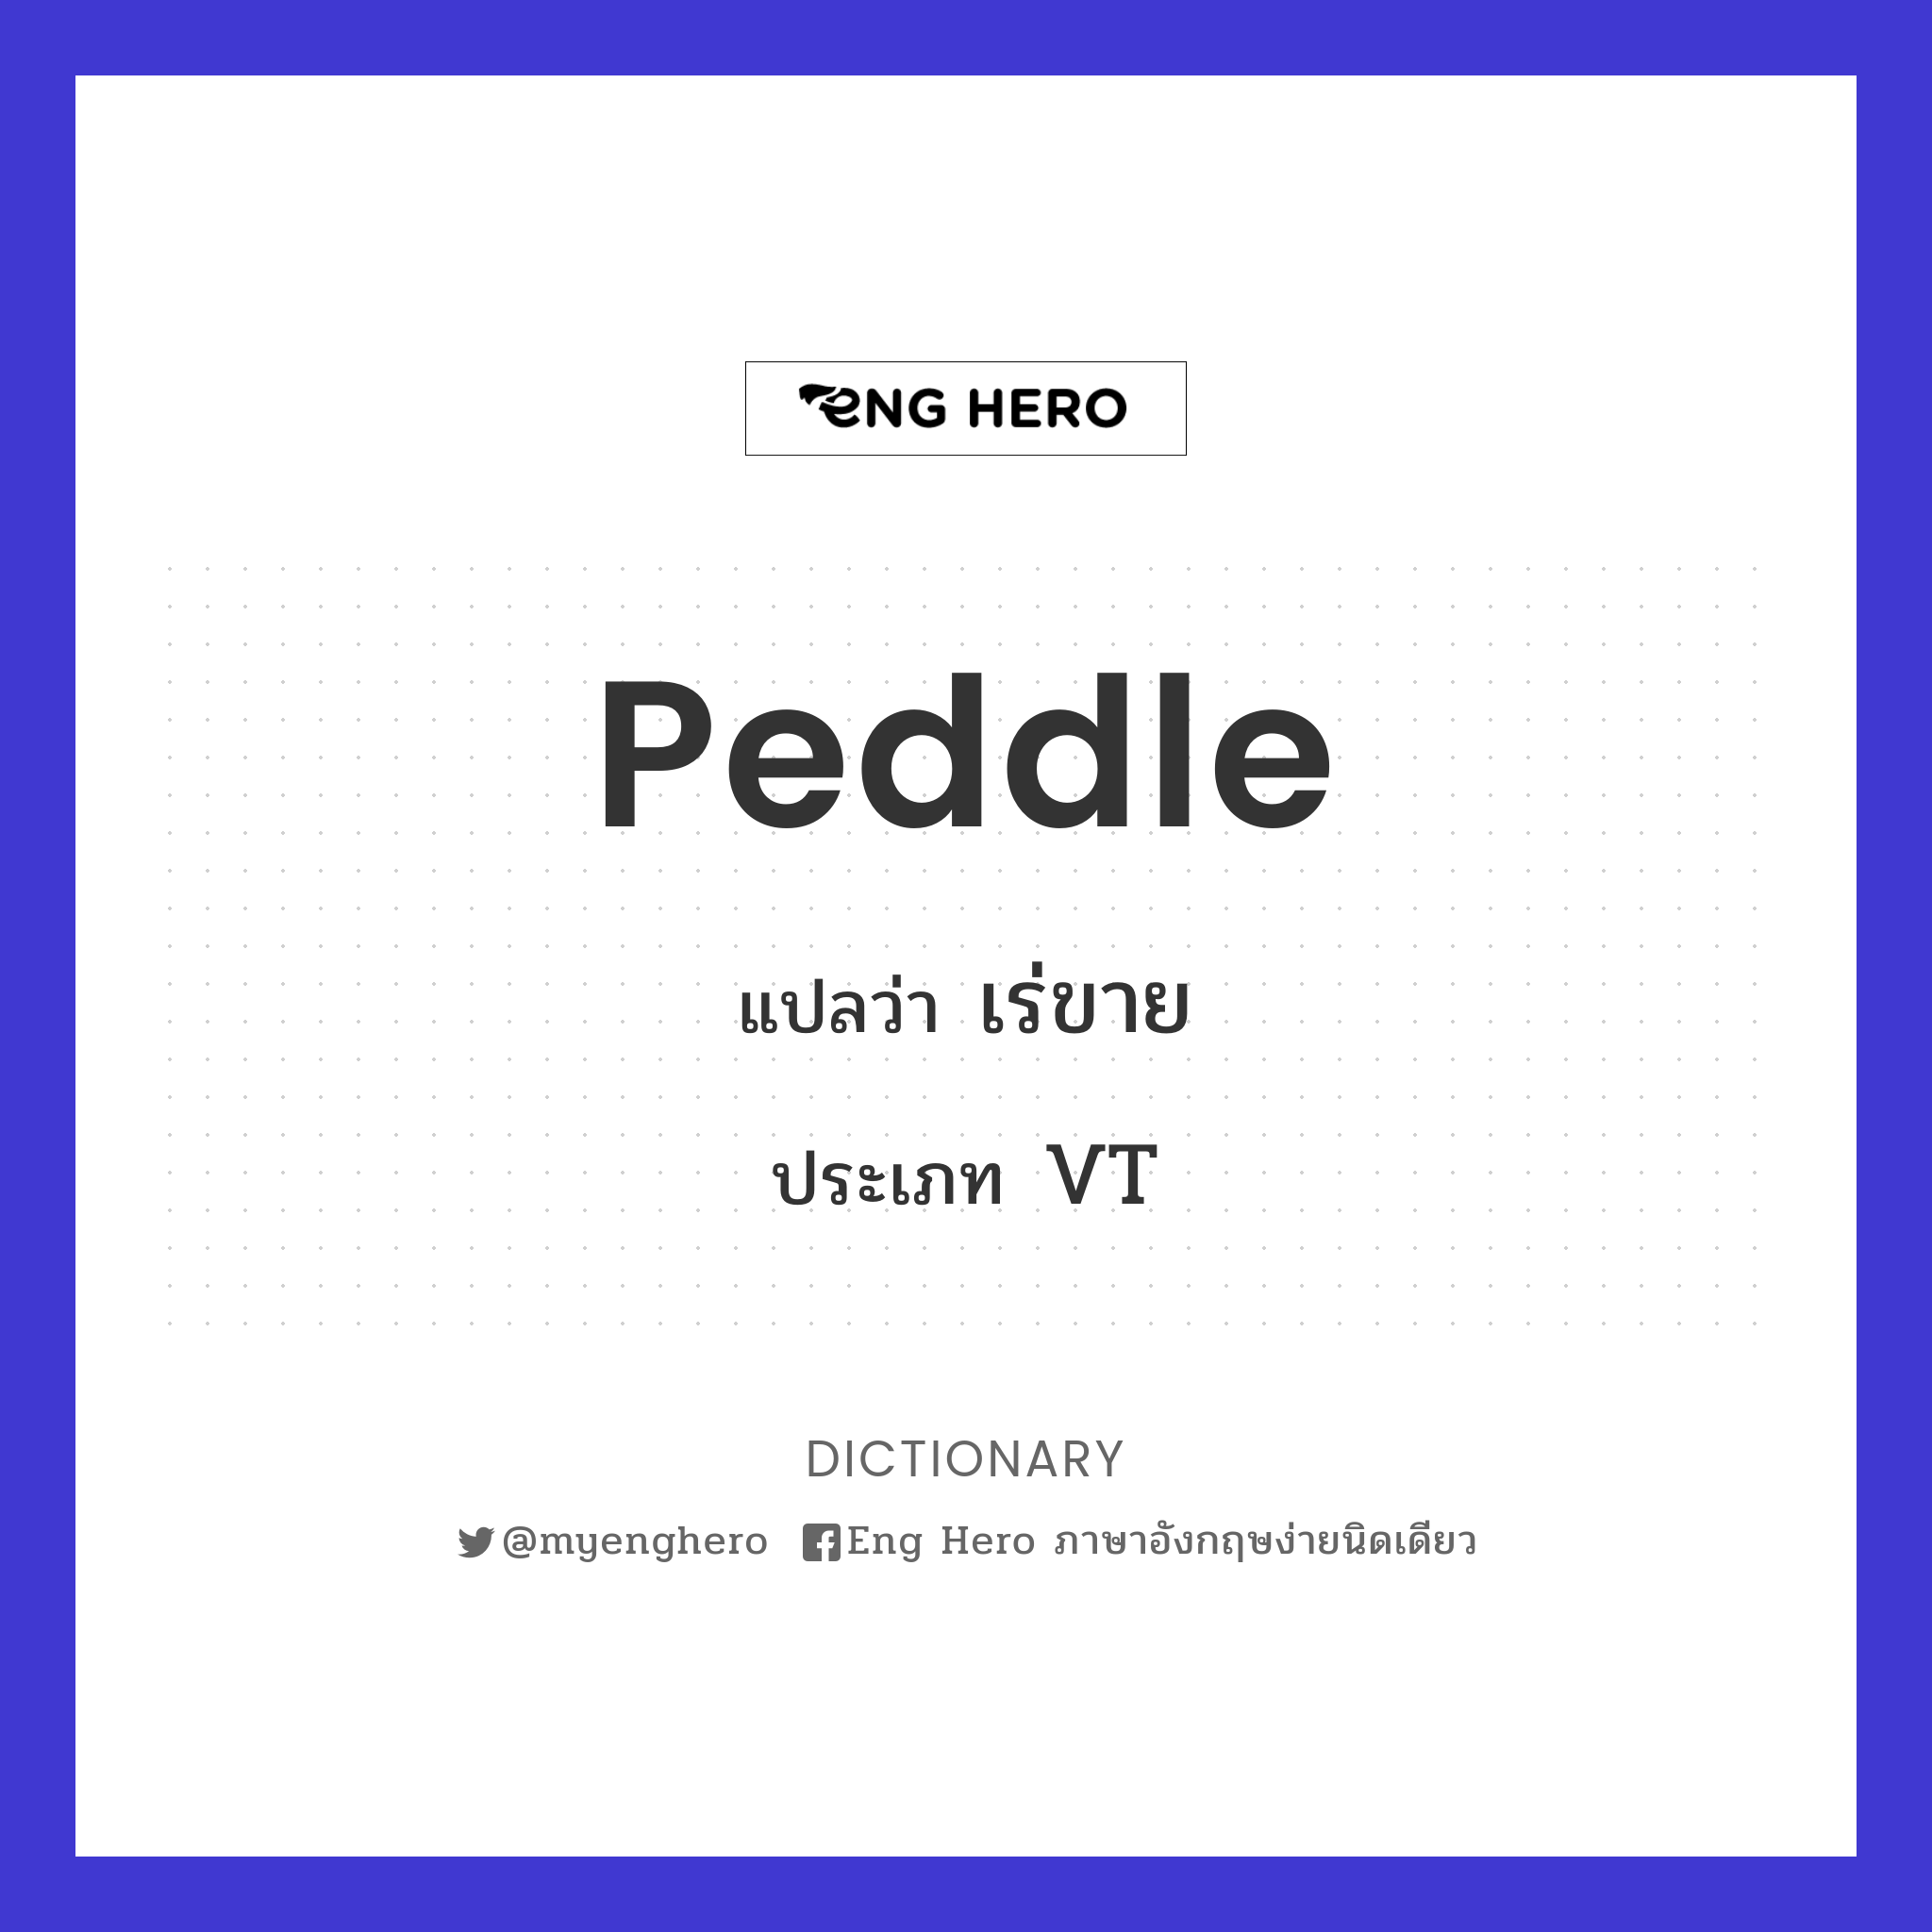 peddle